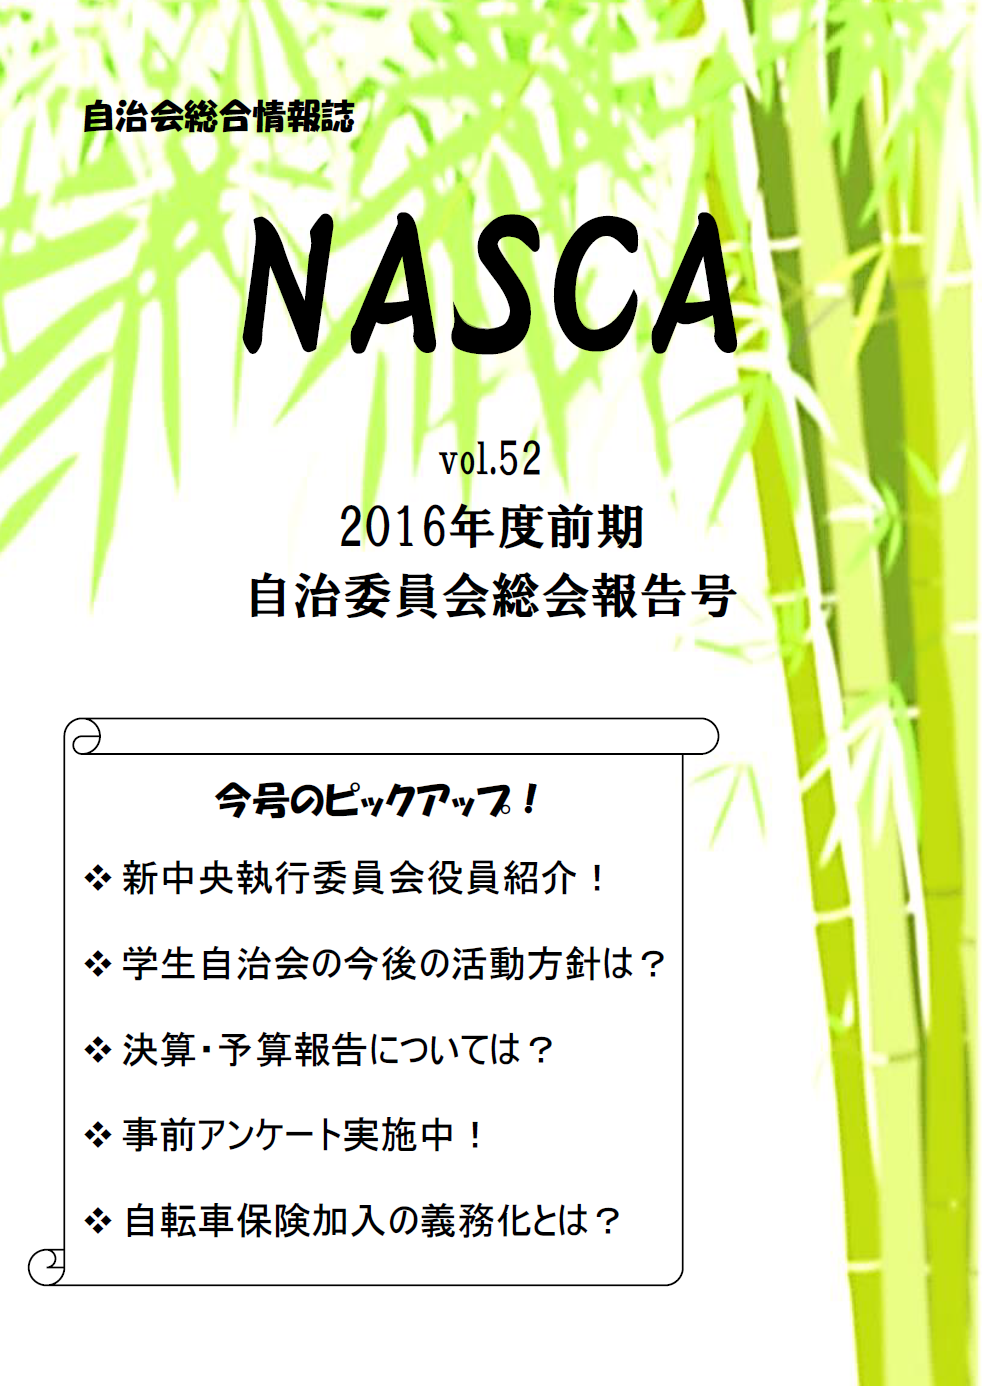 NASCA vol.52表紙